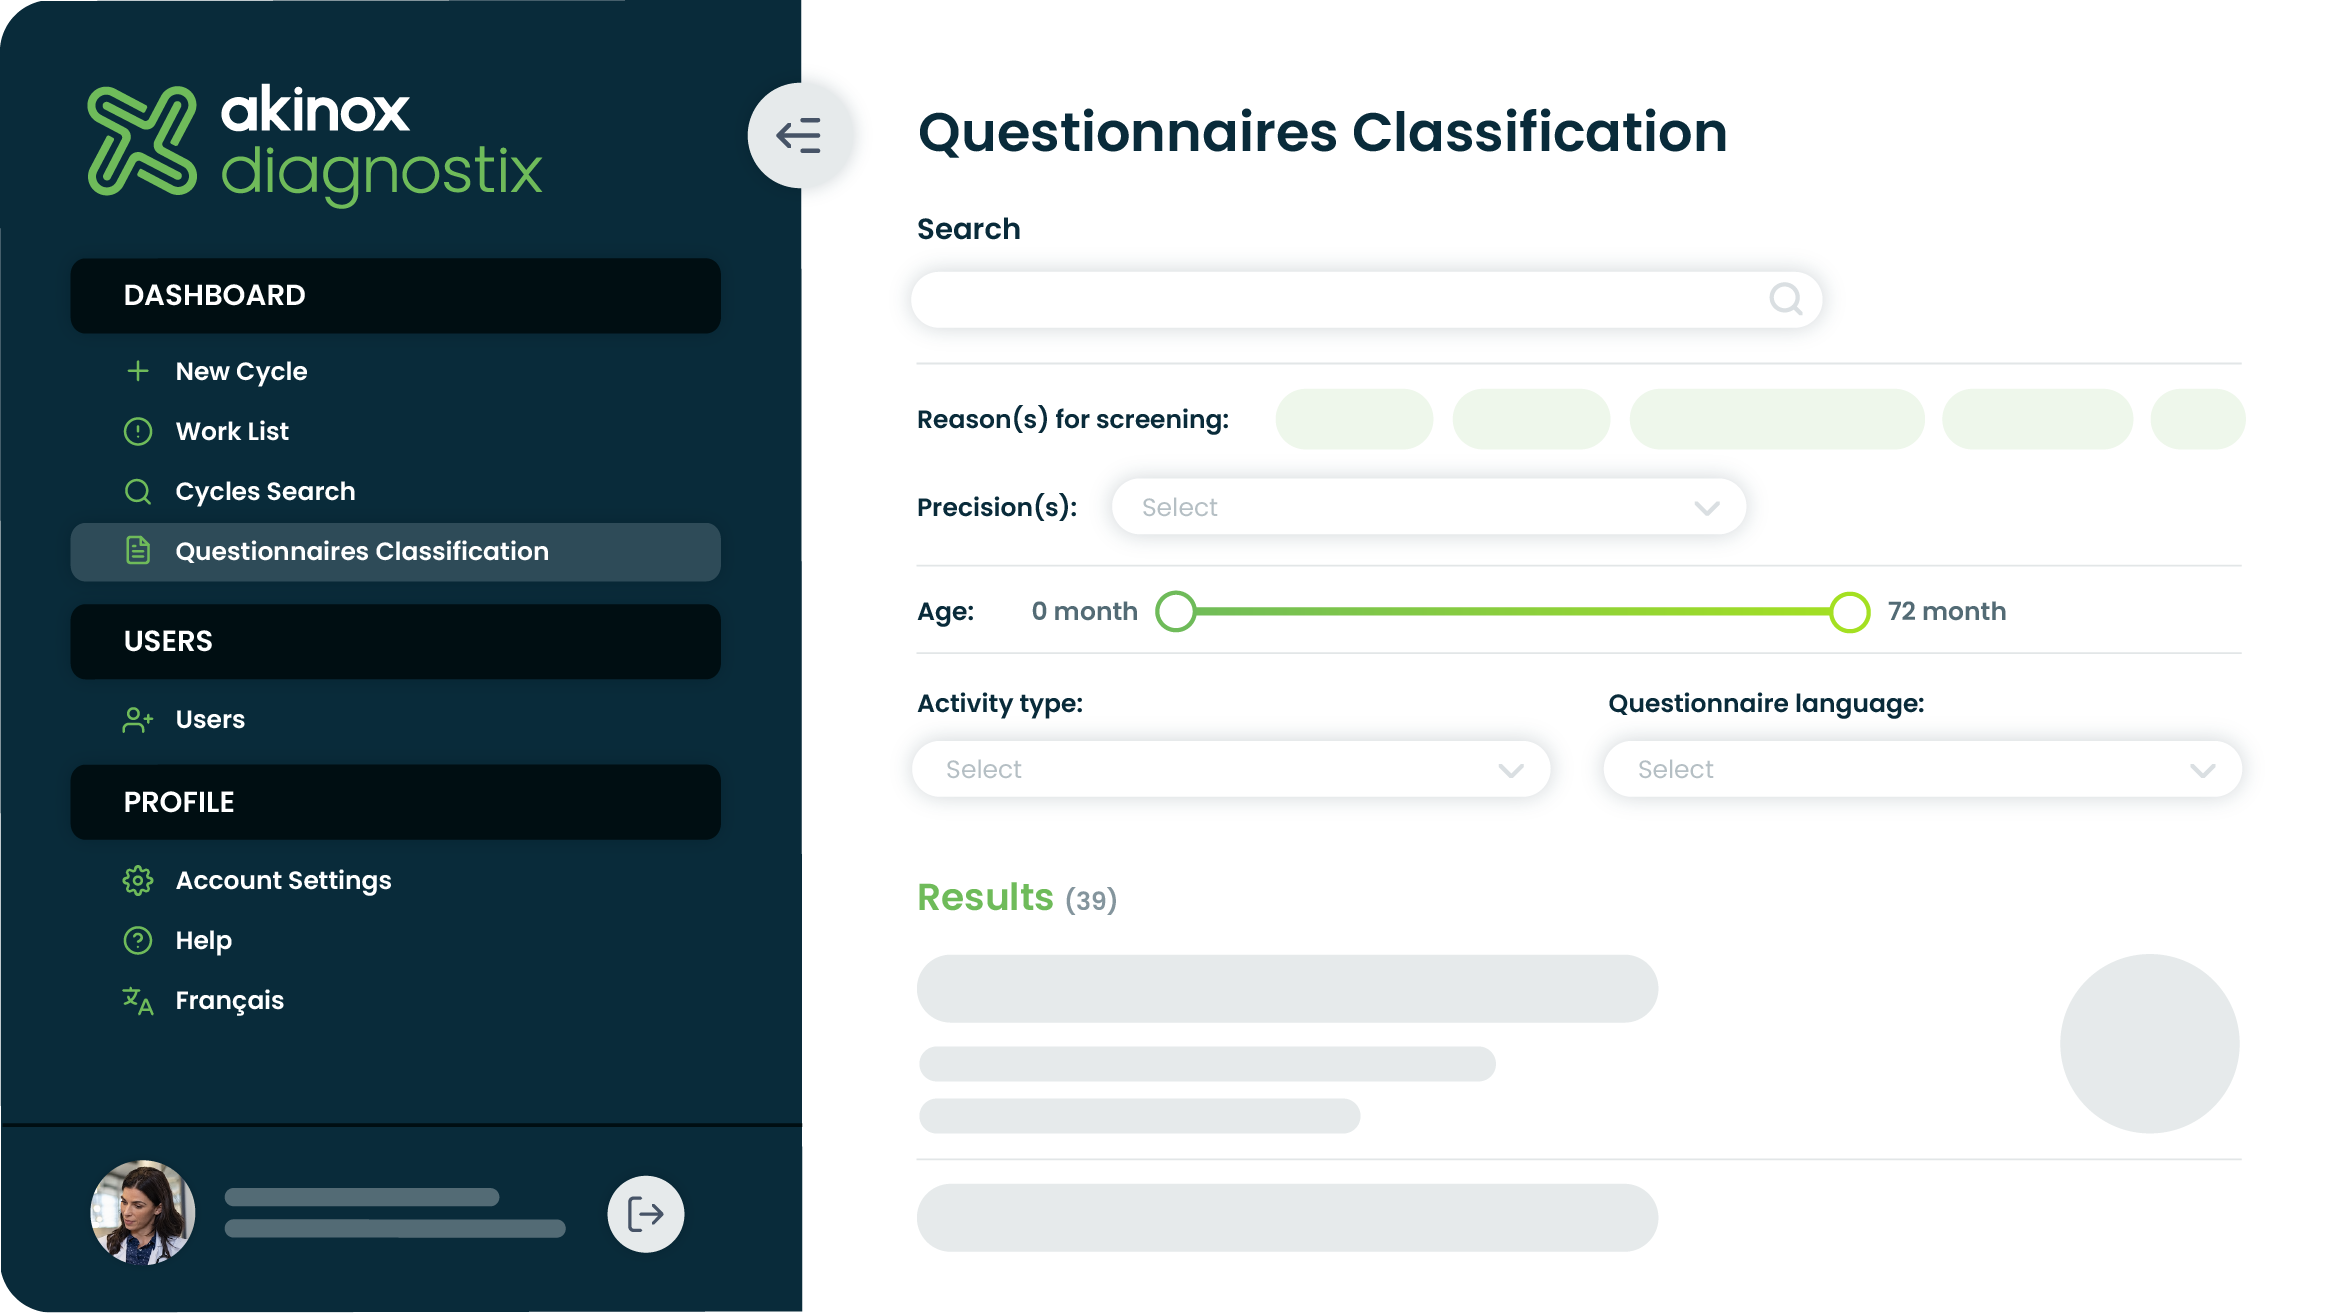 Diagnostix_Questionnaire-Classification